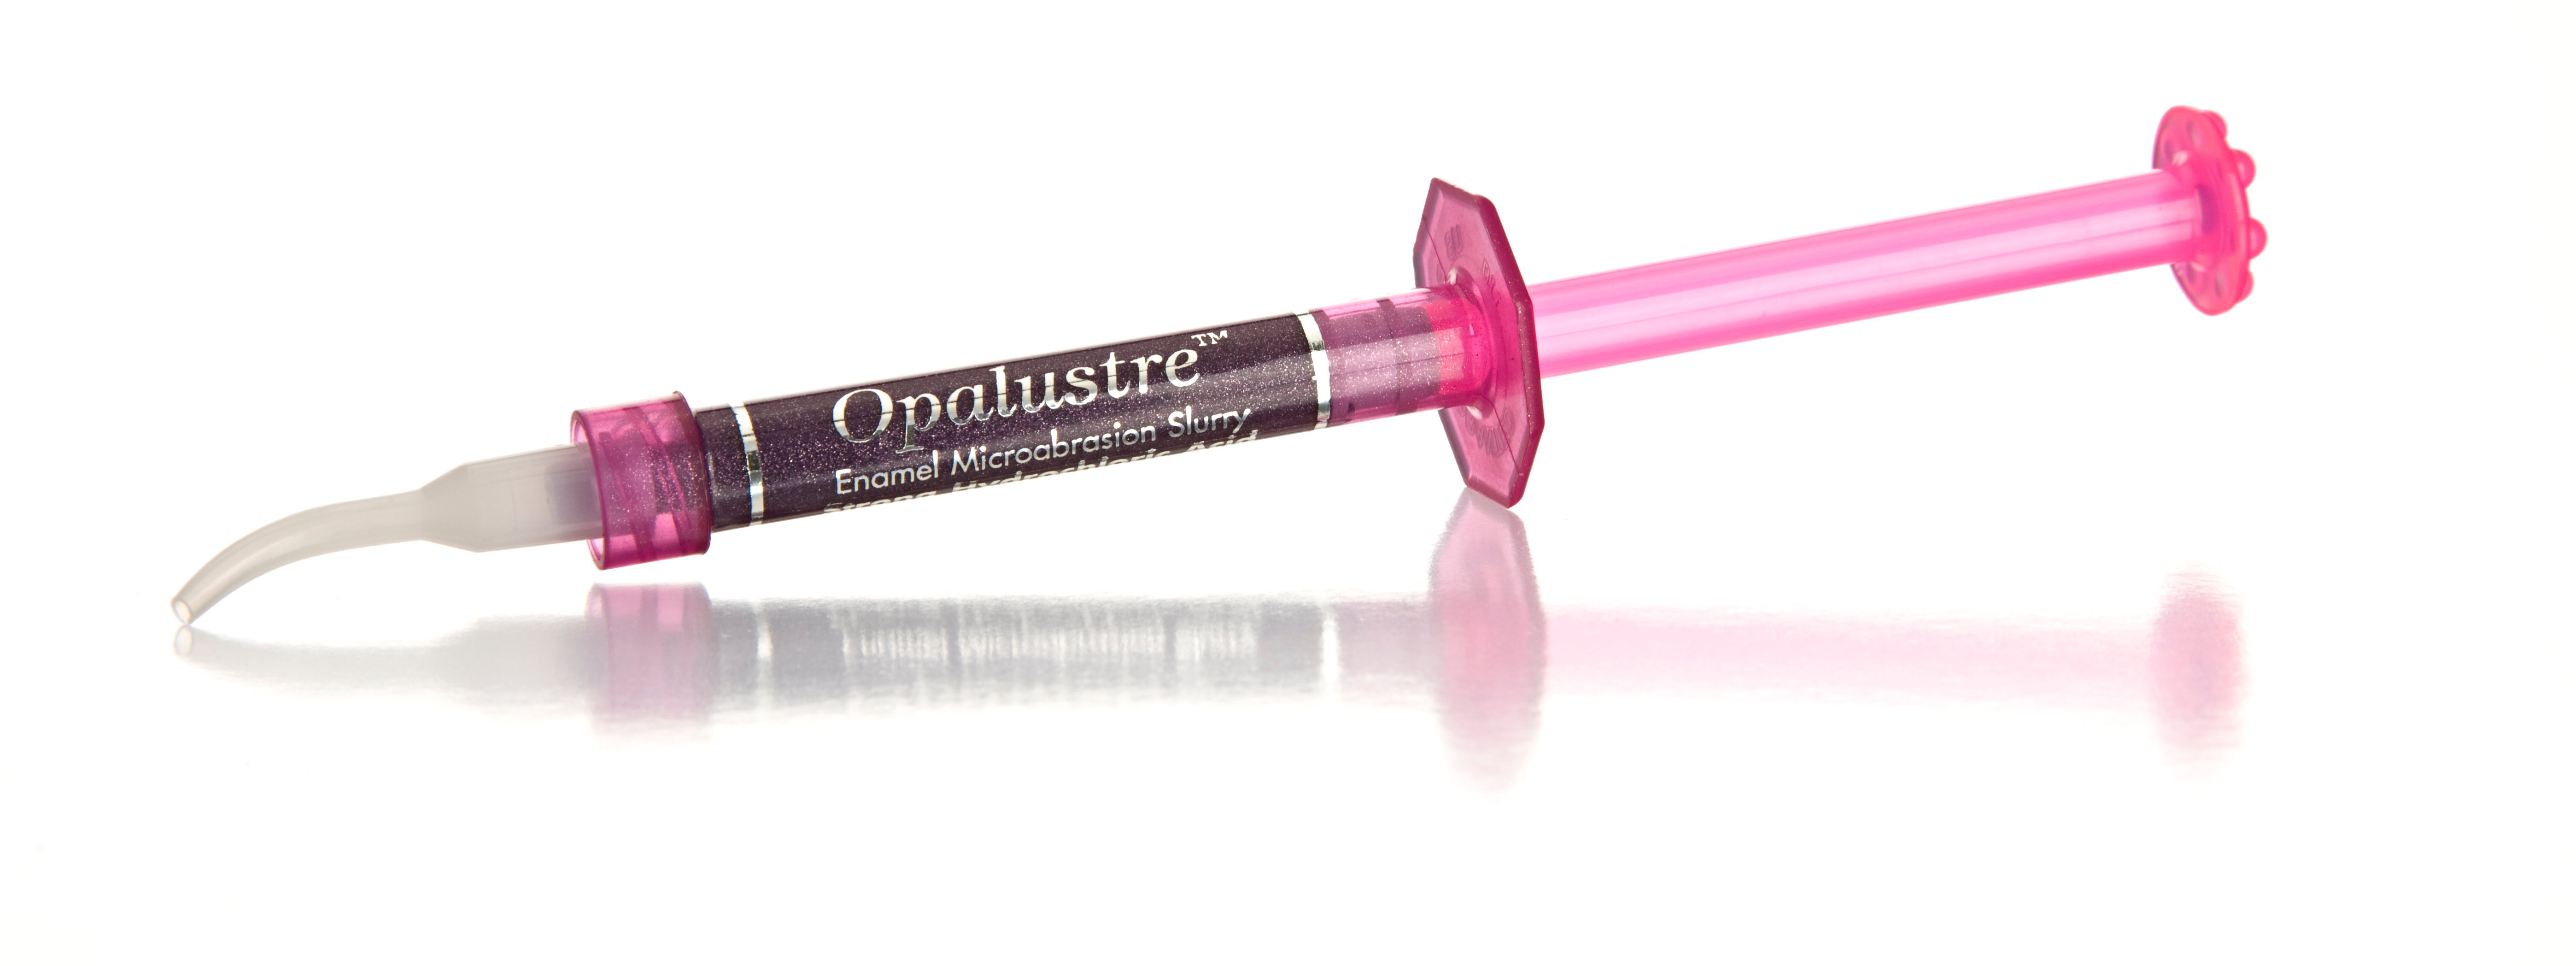 opalustre_syringe_whiten_08refl